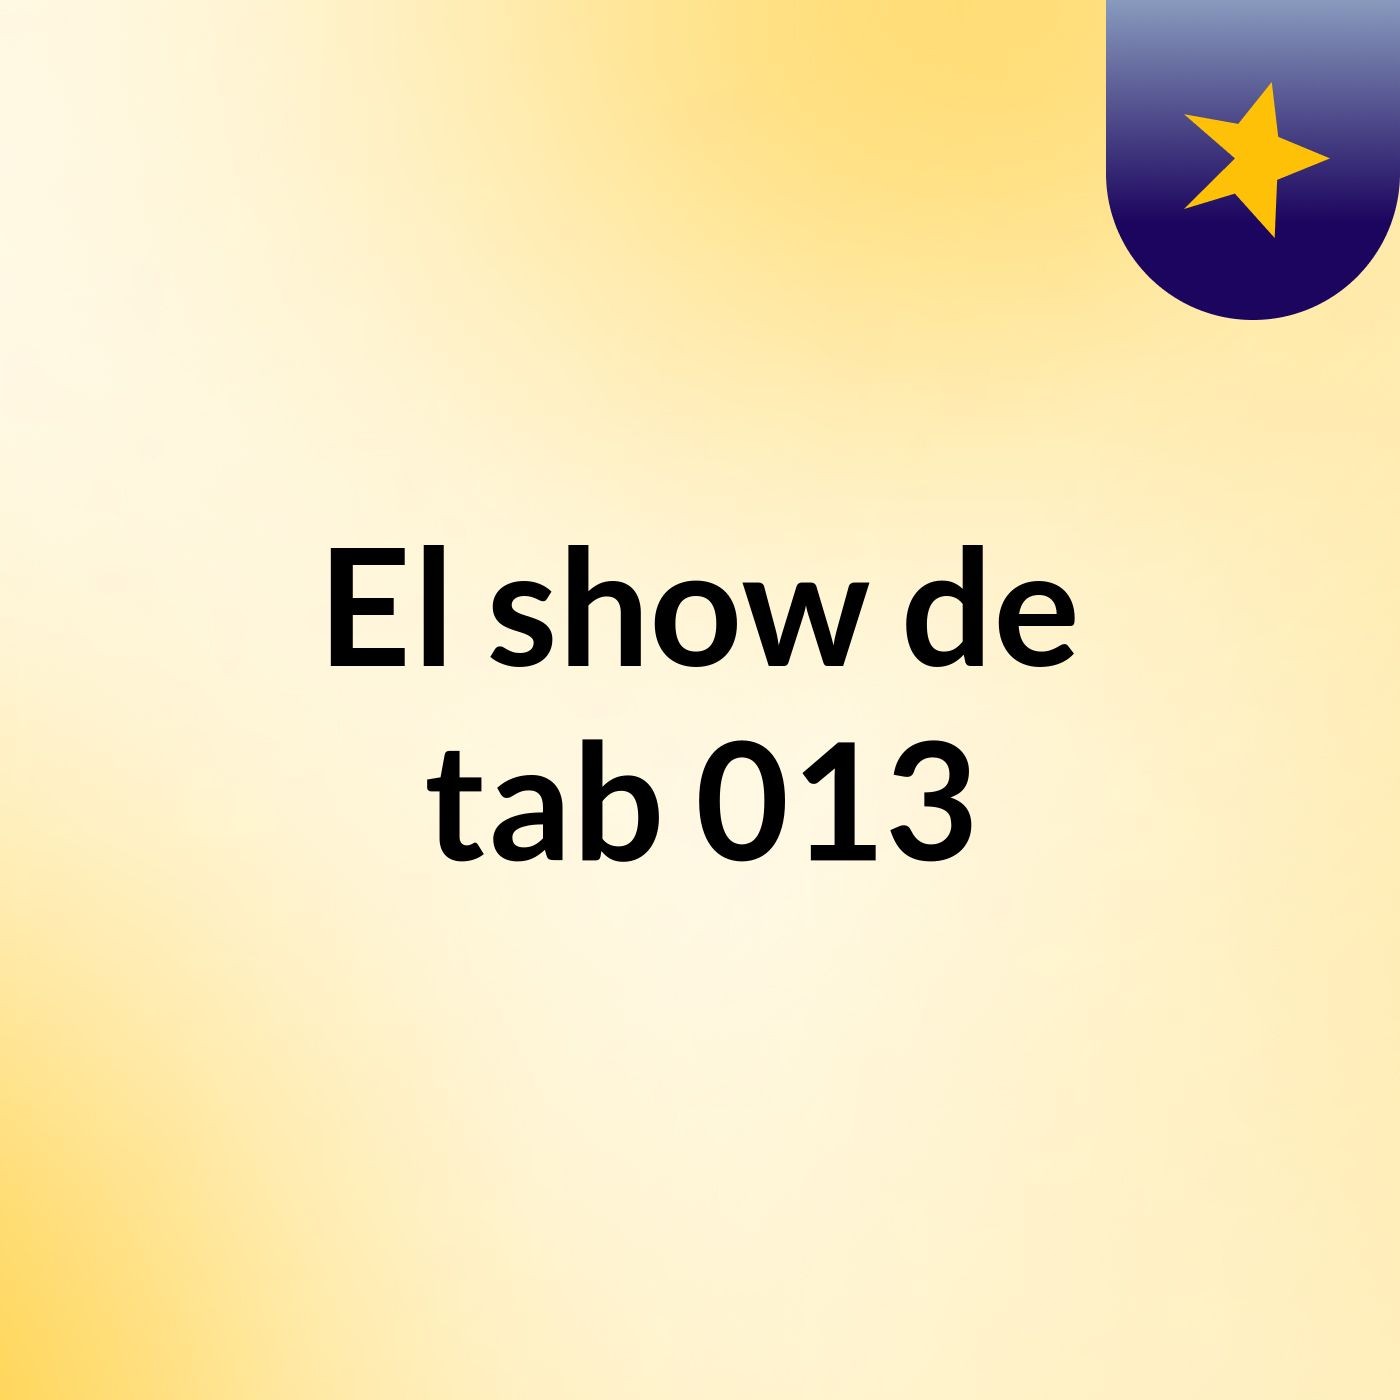 El show de tab 013